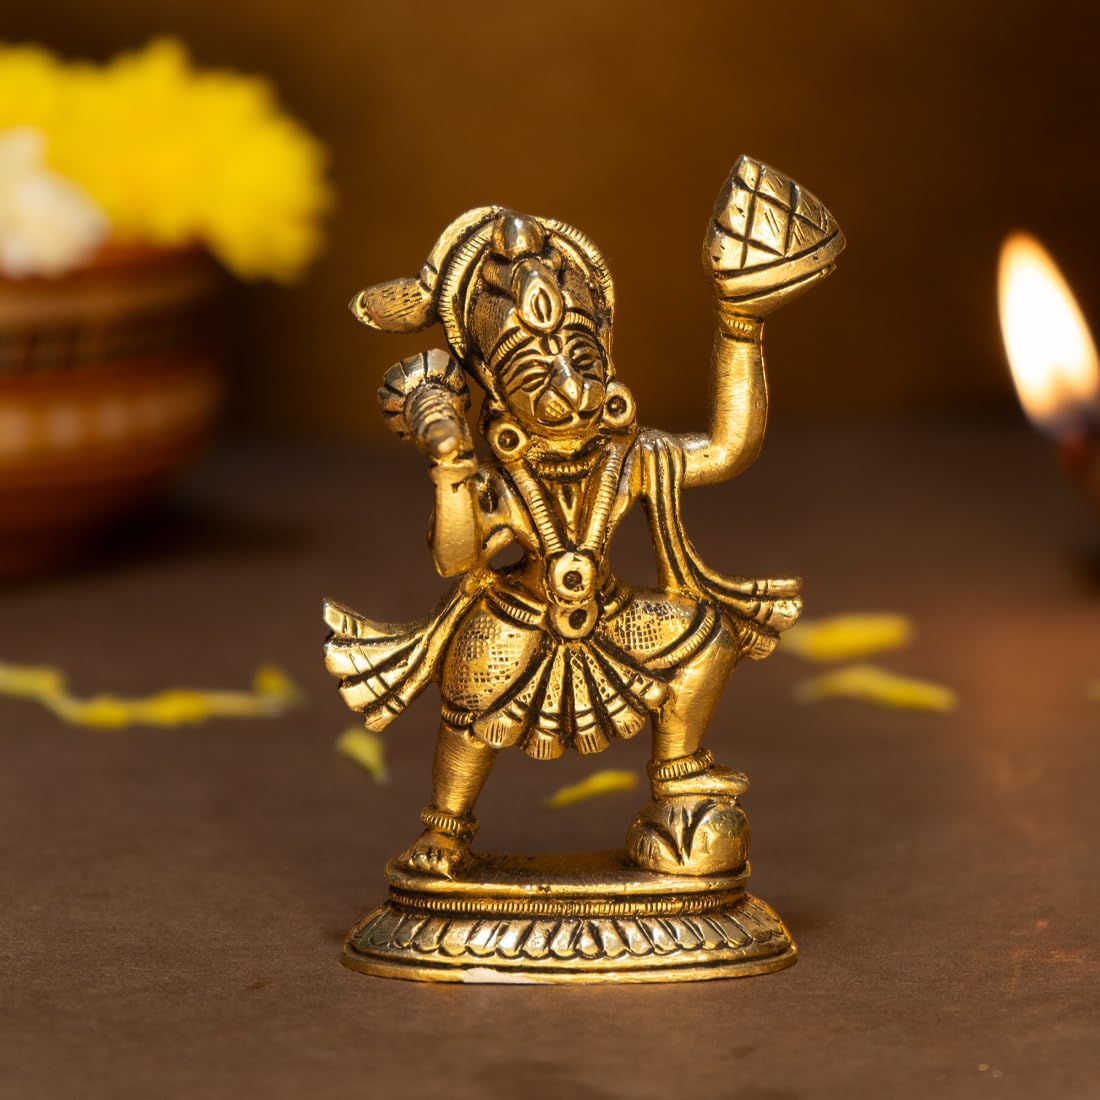 Ekhasa 100% Pure Brass Hanuman Ji Murti for Home Puja (Size: 6 cm) | Lord Hanuman Idol for Desk, Car and Home Decor | Balaji Idol | Bajrangbali Murti | Bahubali Hanuman Idol